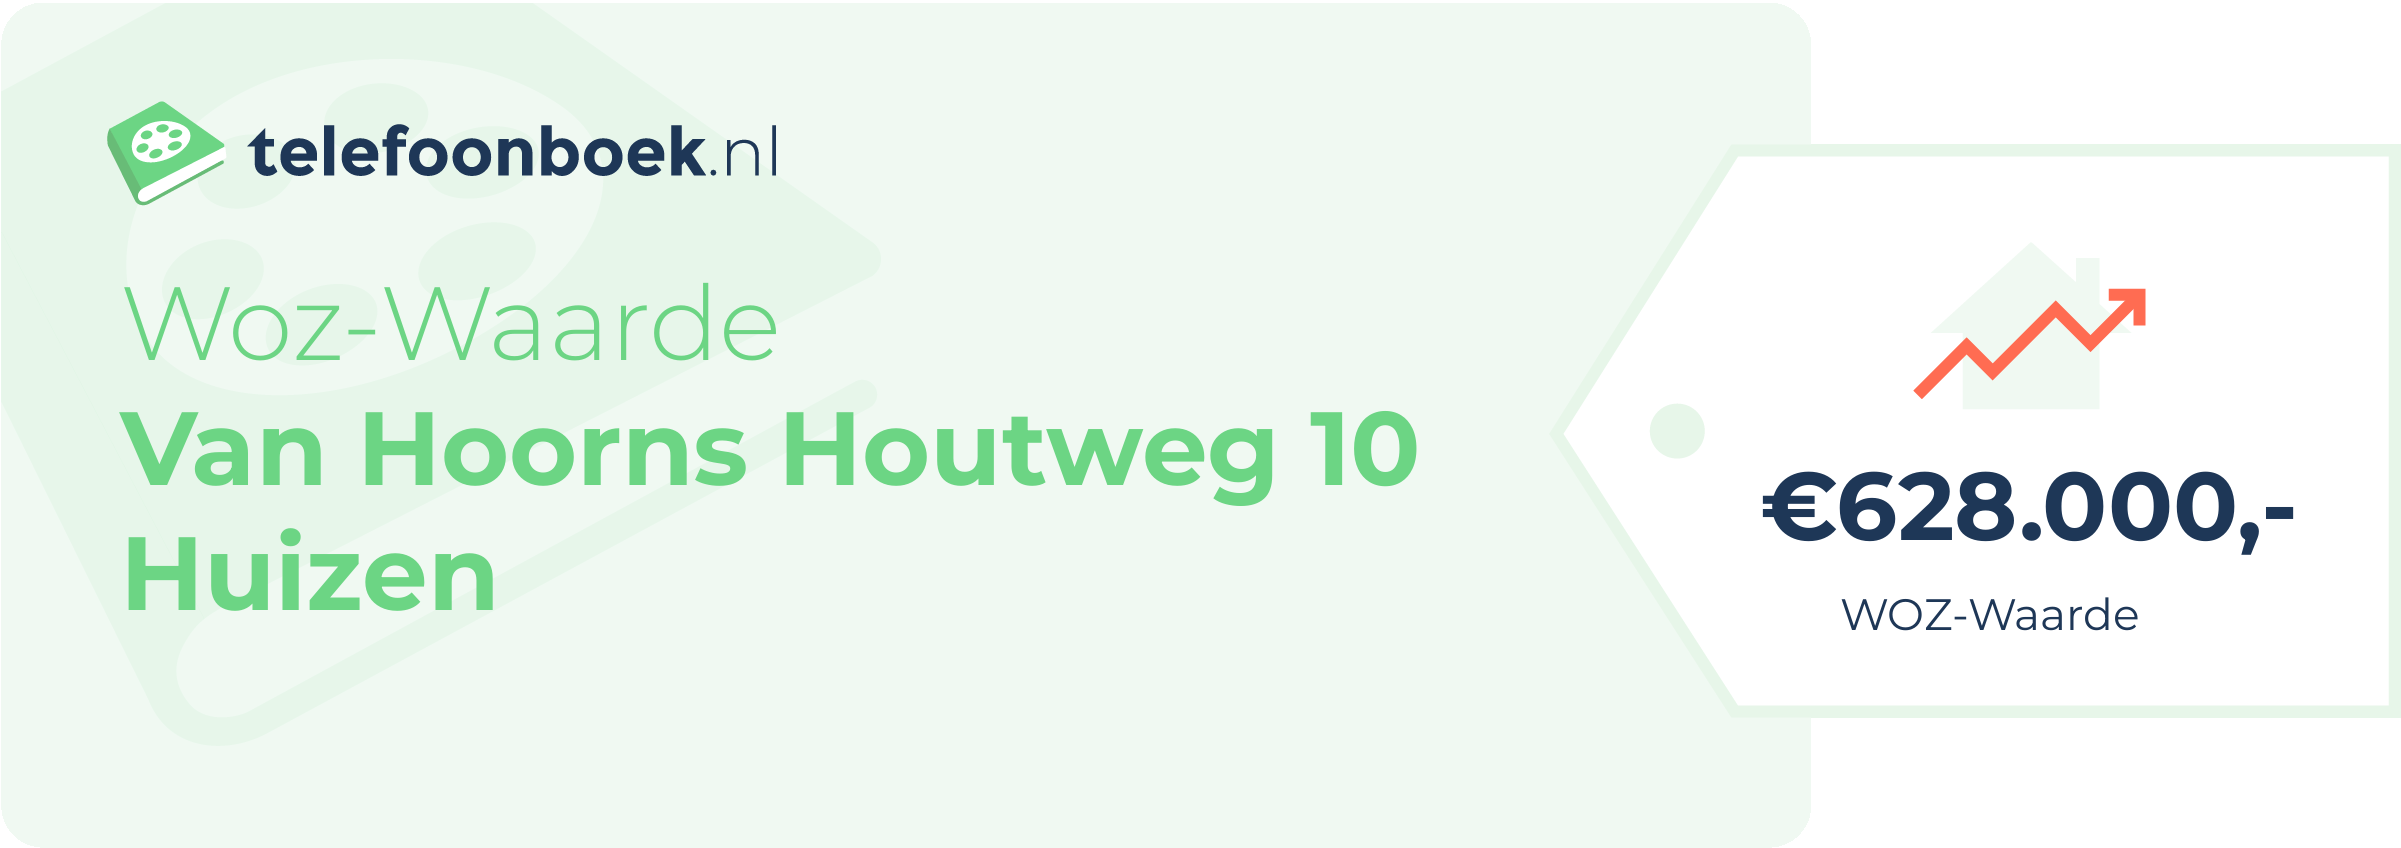 WOZ-waarde Van Hoorns Houtweg 10 Huizen